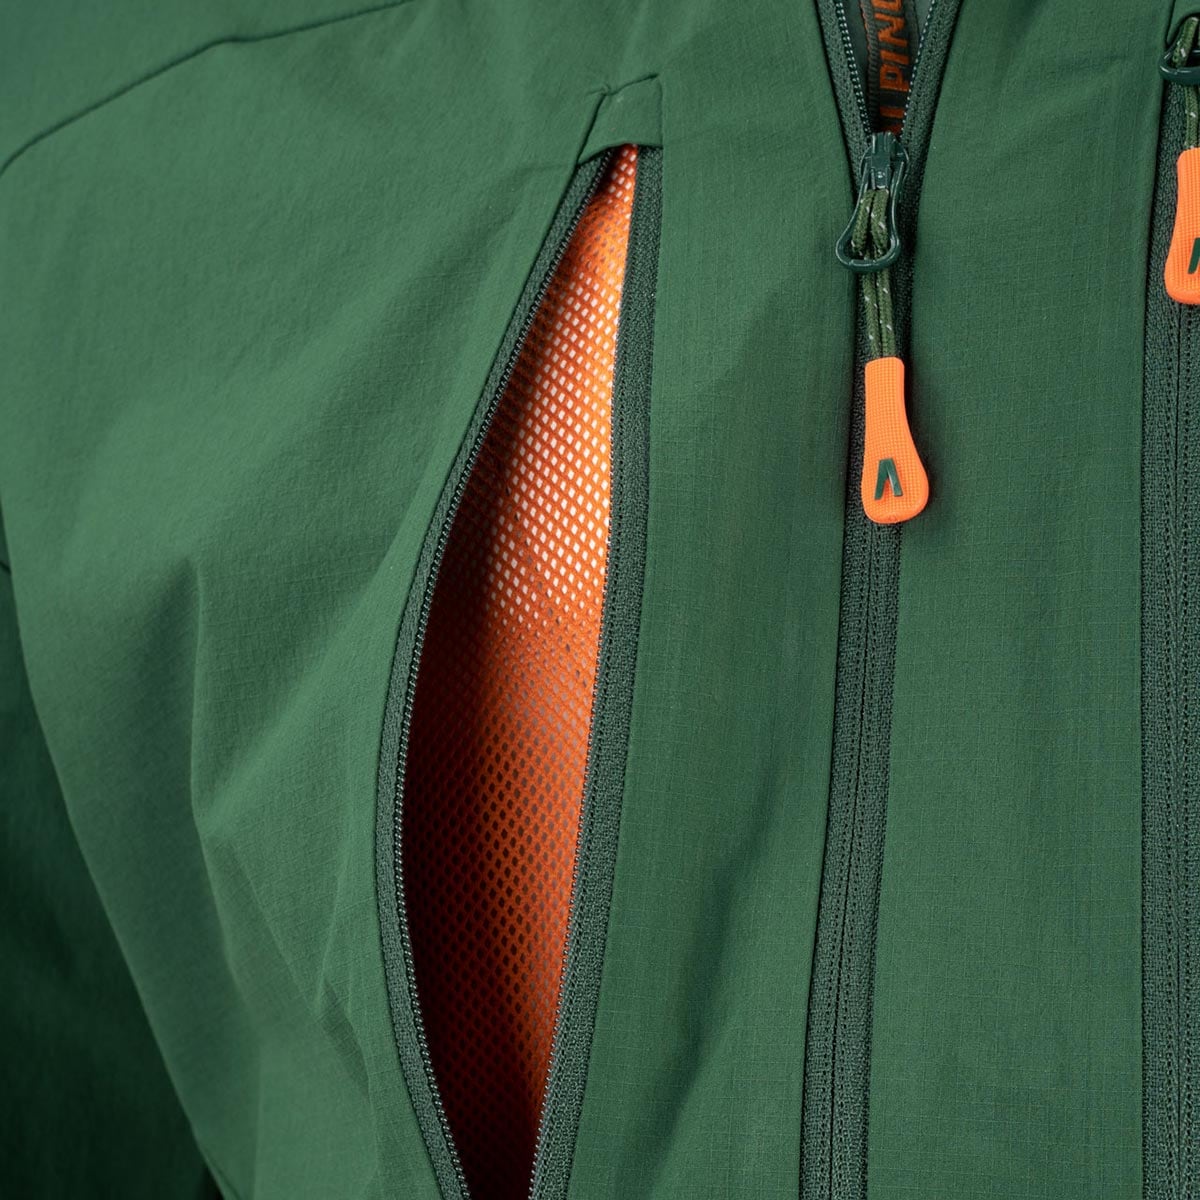 Куртка Alpinus Softshell Pourri - Зелена